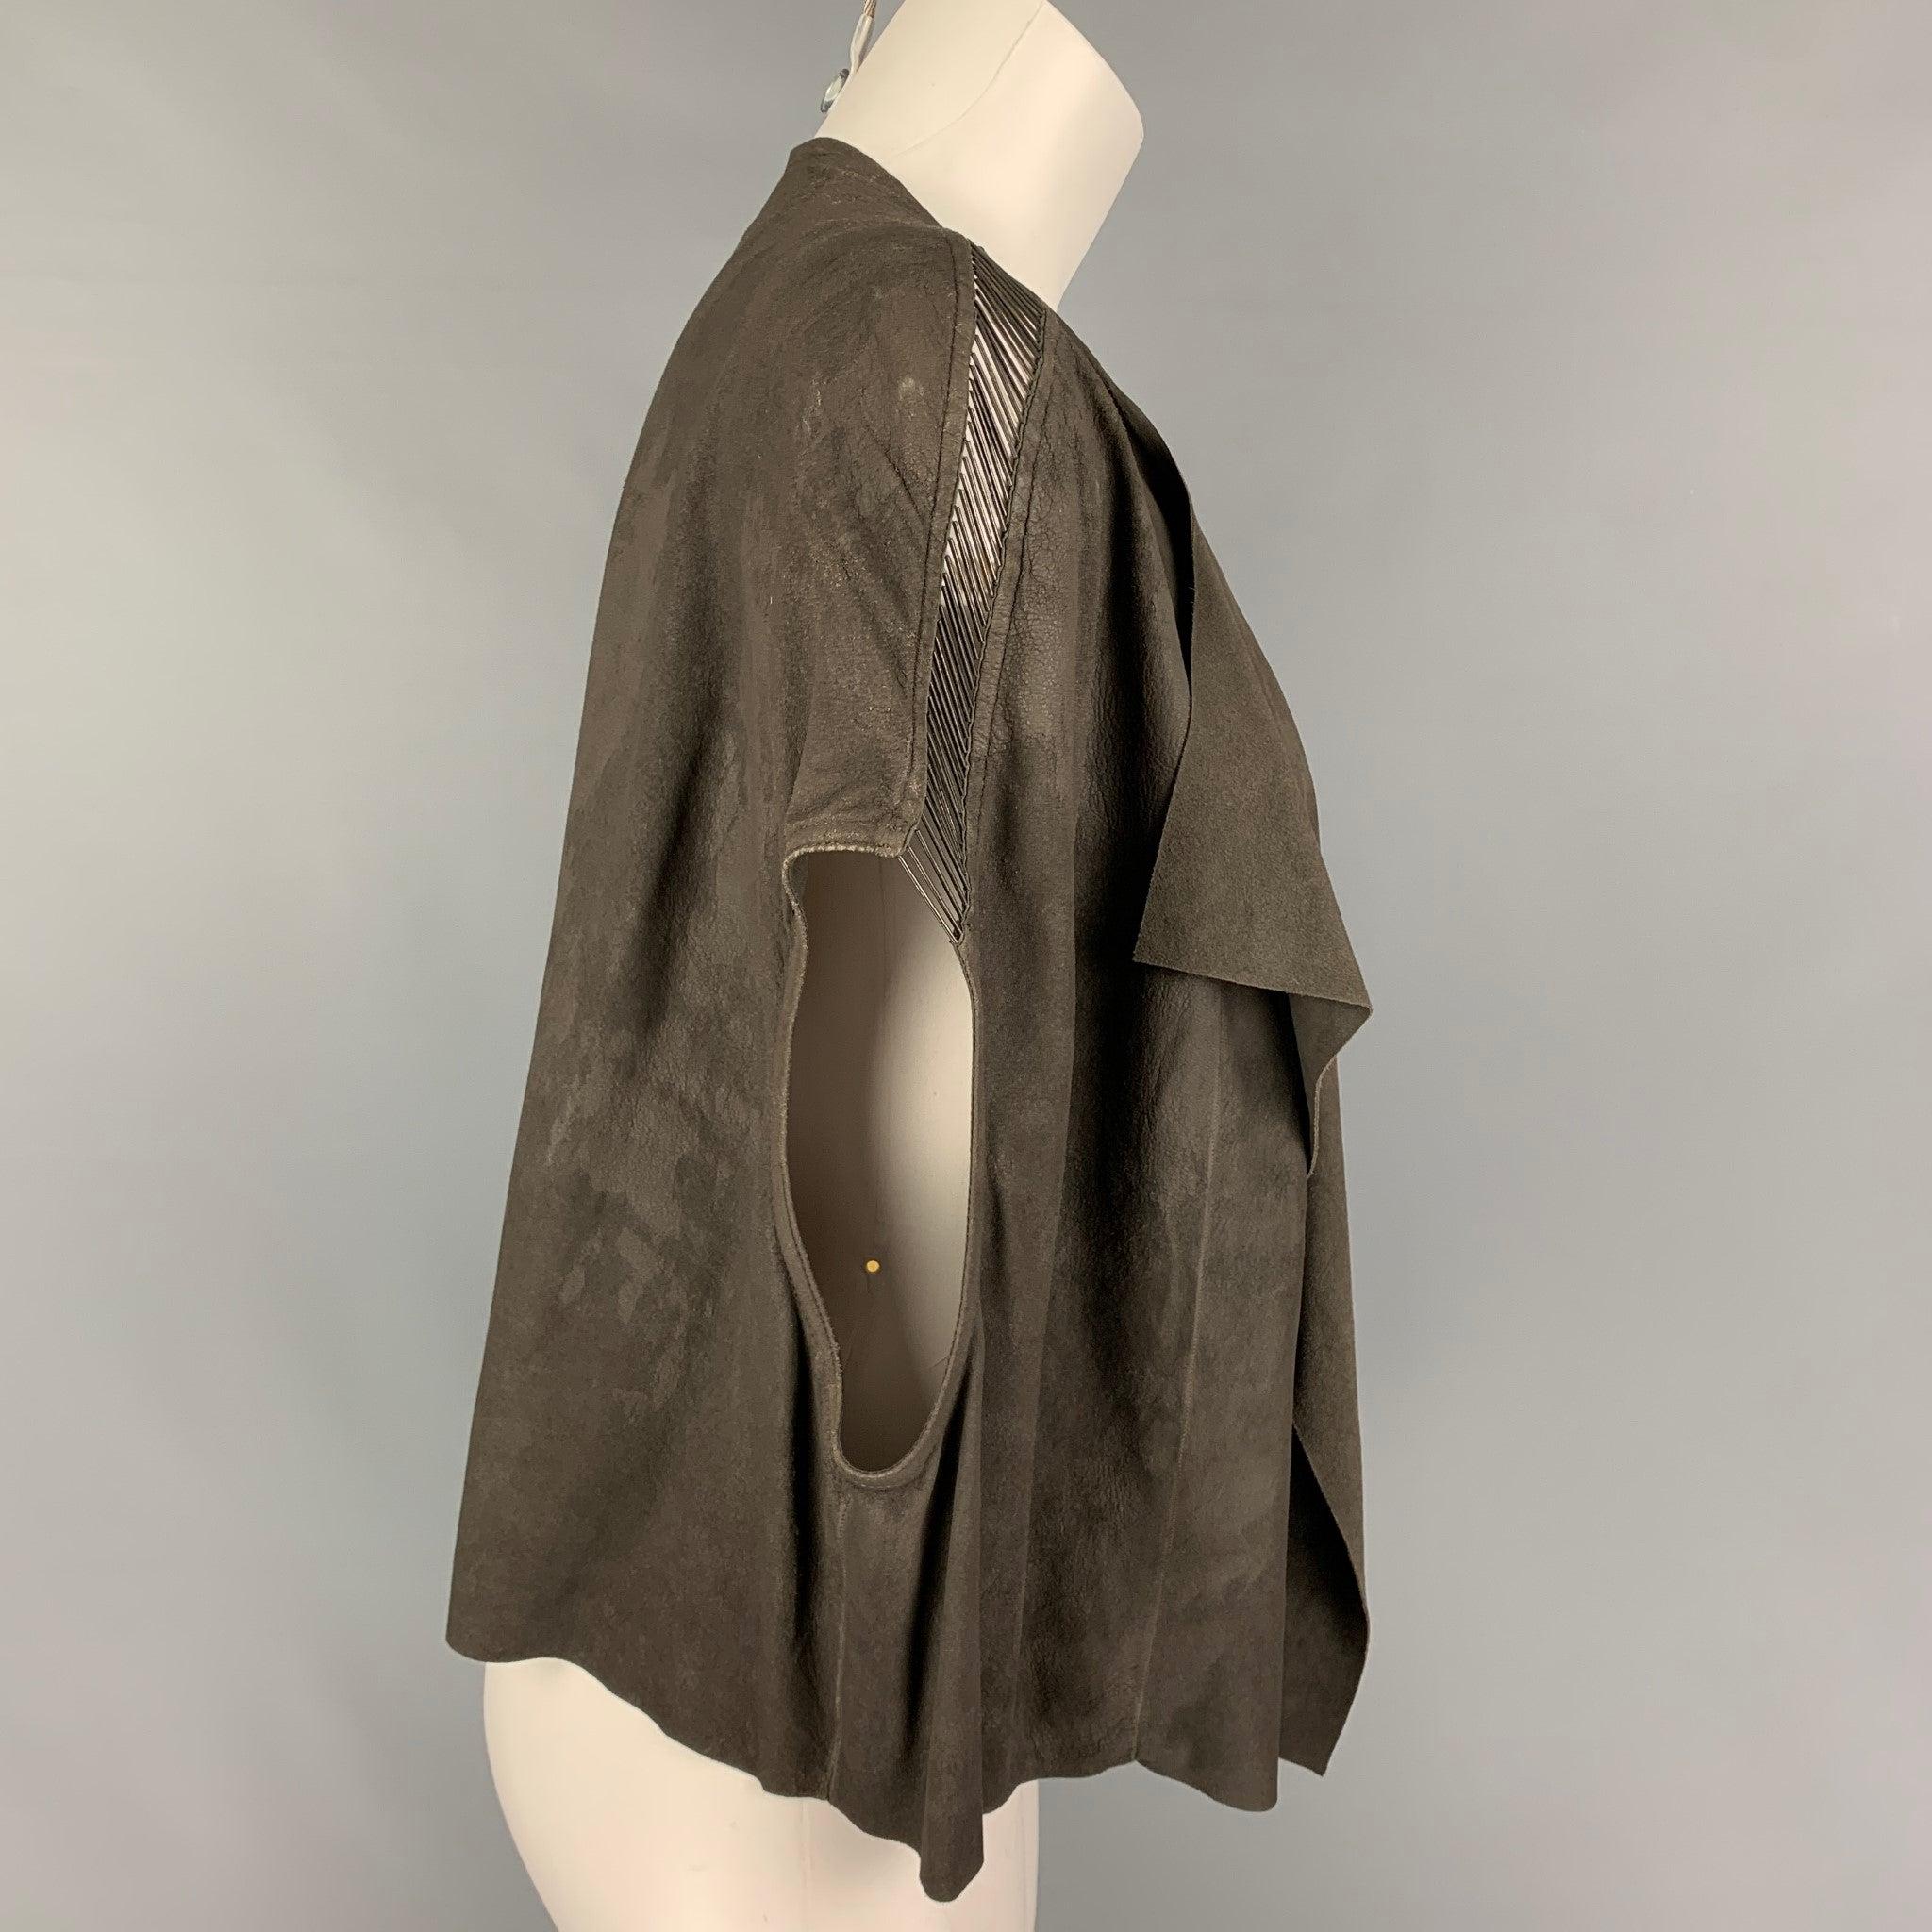 Le gilet 'DIRT' SS 18 de RICK OWENS est disponible en daim gris et présente un style drapé, des ornements métalliques à l'épaule et un devant ouvert.Très bon
Etat d'occasion. Étiquette de tissu enlevée.  

Marqué :   Étiquette de taille enlevée